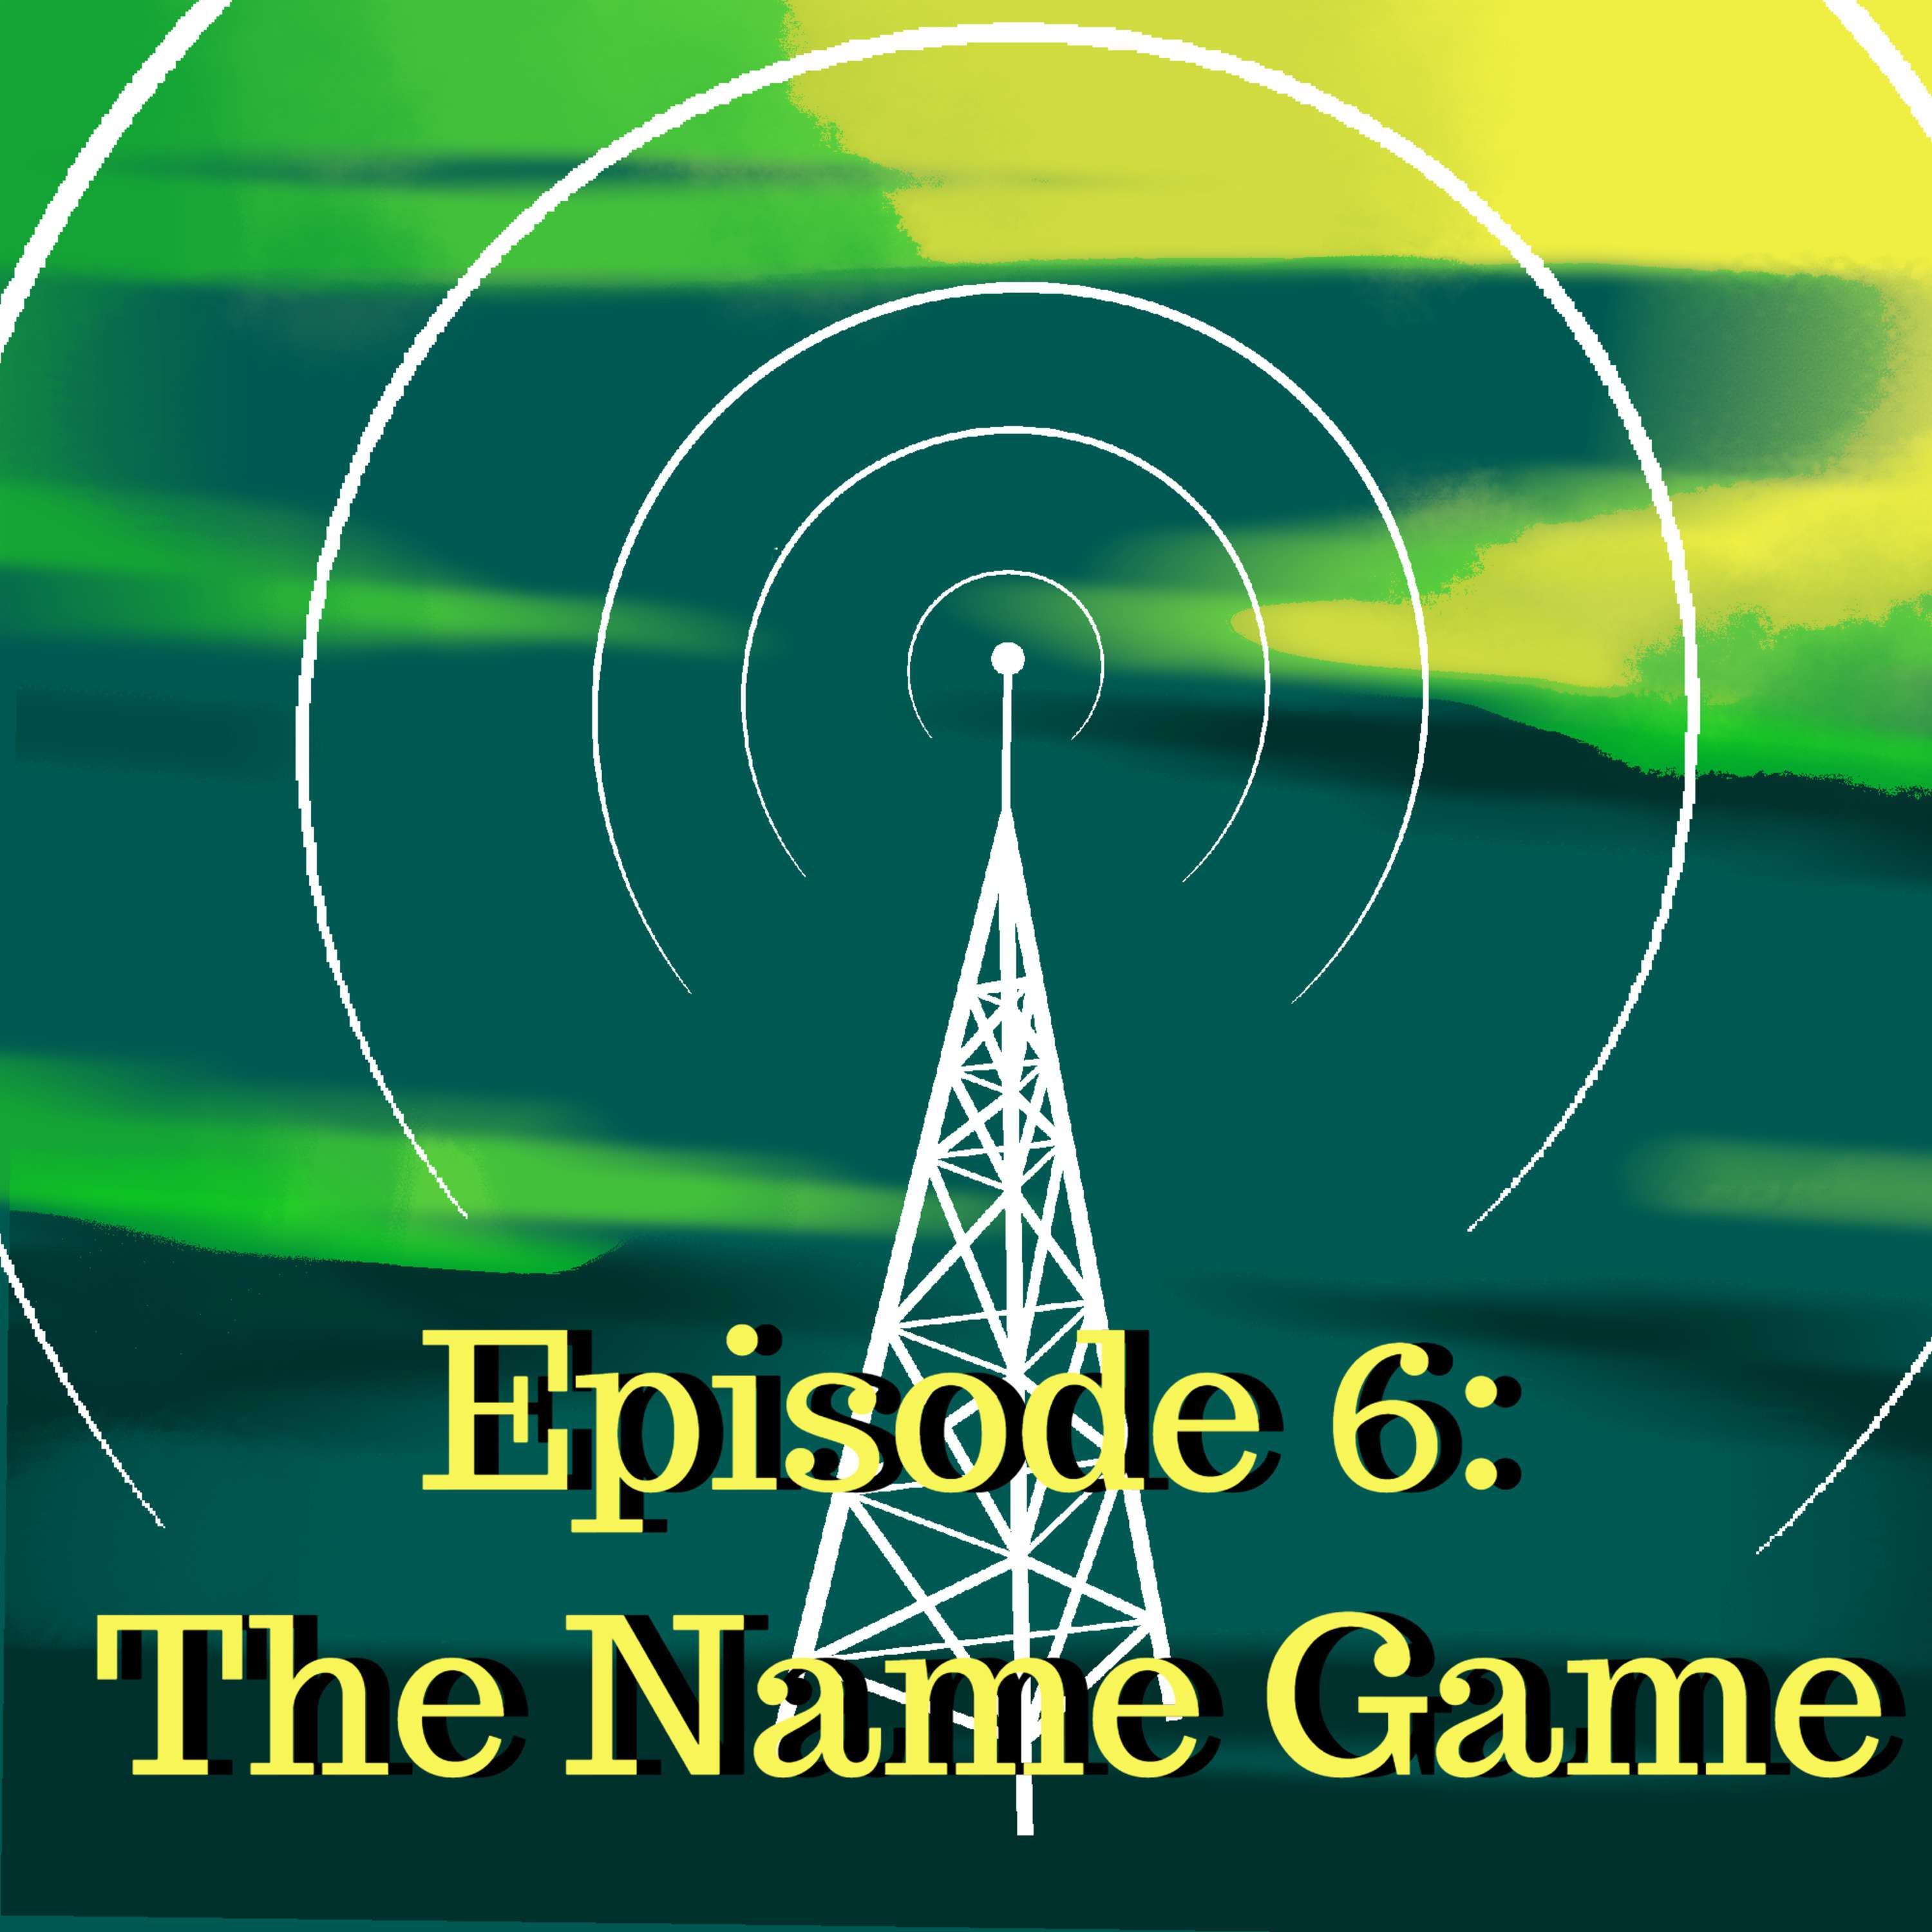 Episode 6: ”The Name Game”